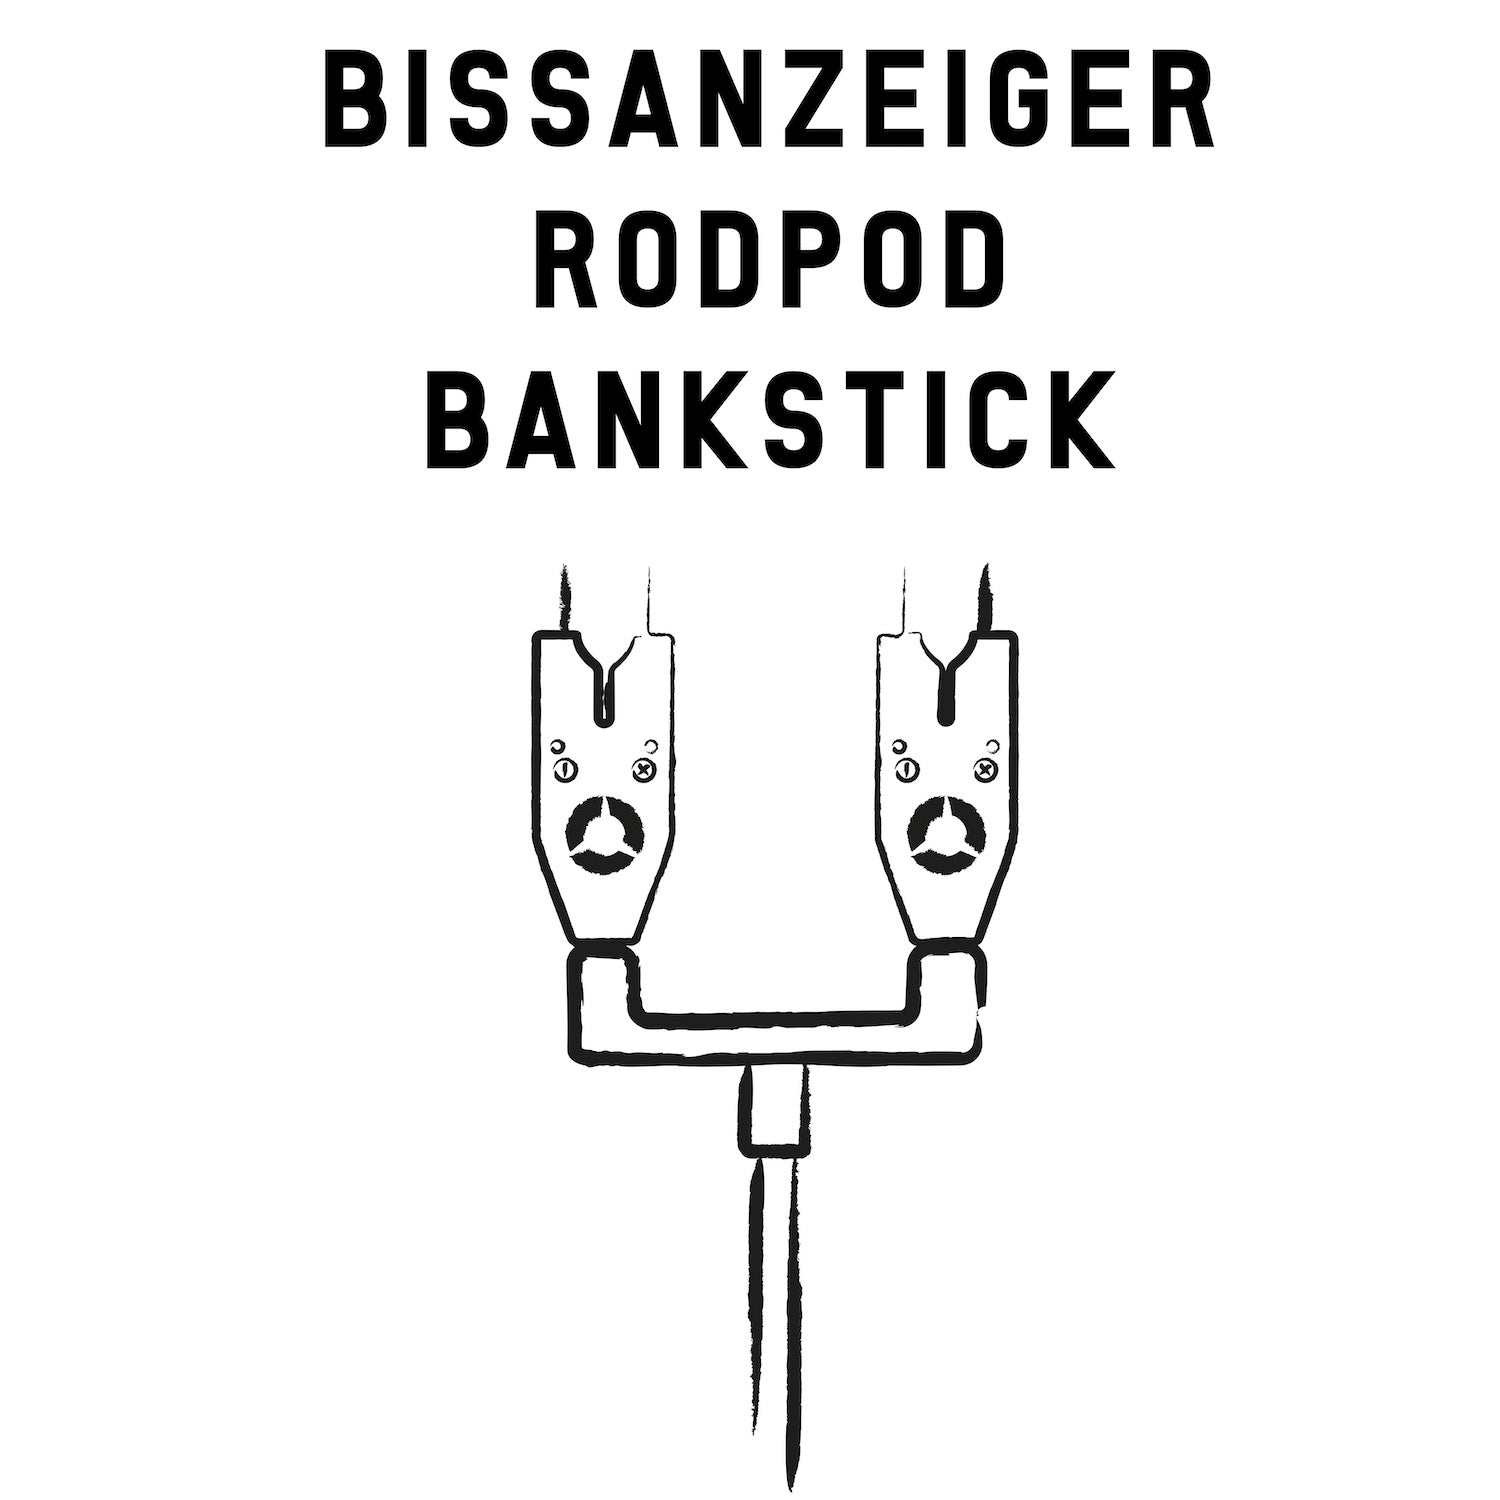 Rod Pods, Bank Sticks &amp; Bissanzeiger